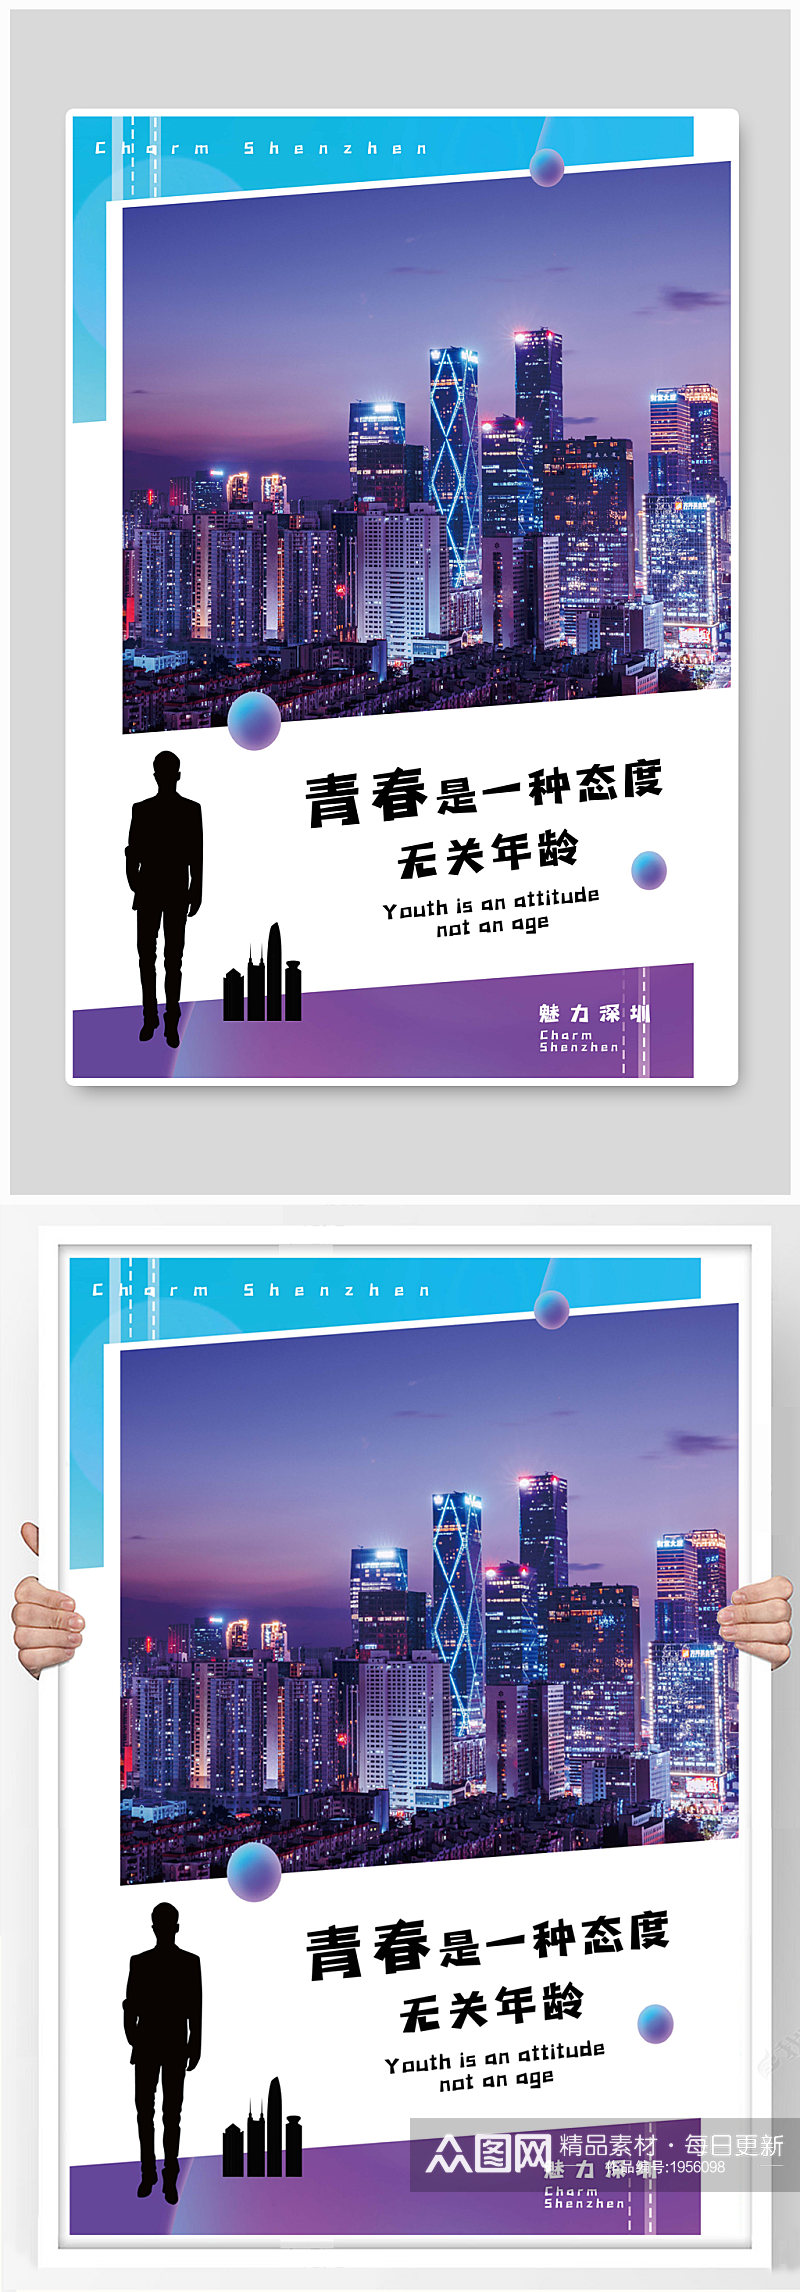 淡紫色深圳城市正能量摄影图海报素材